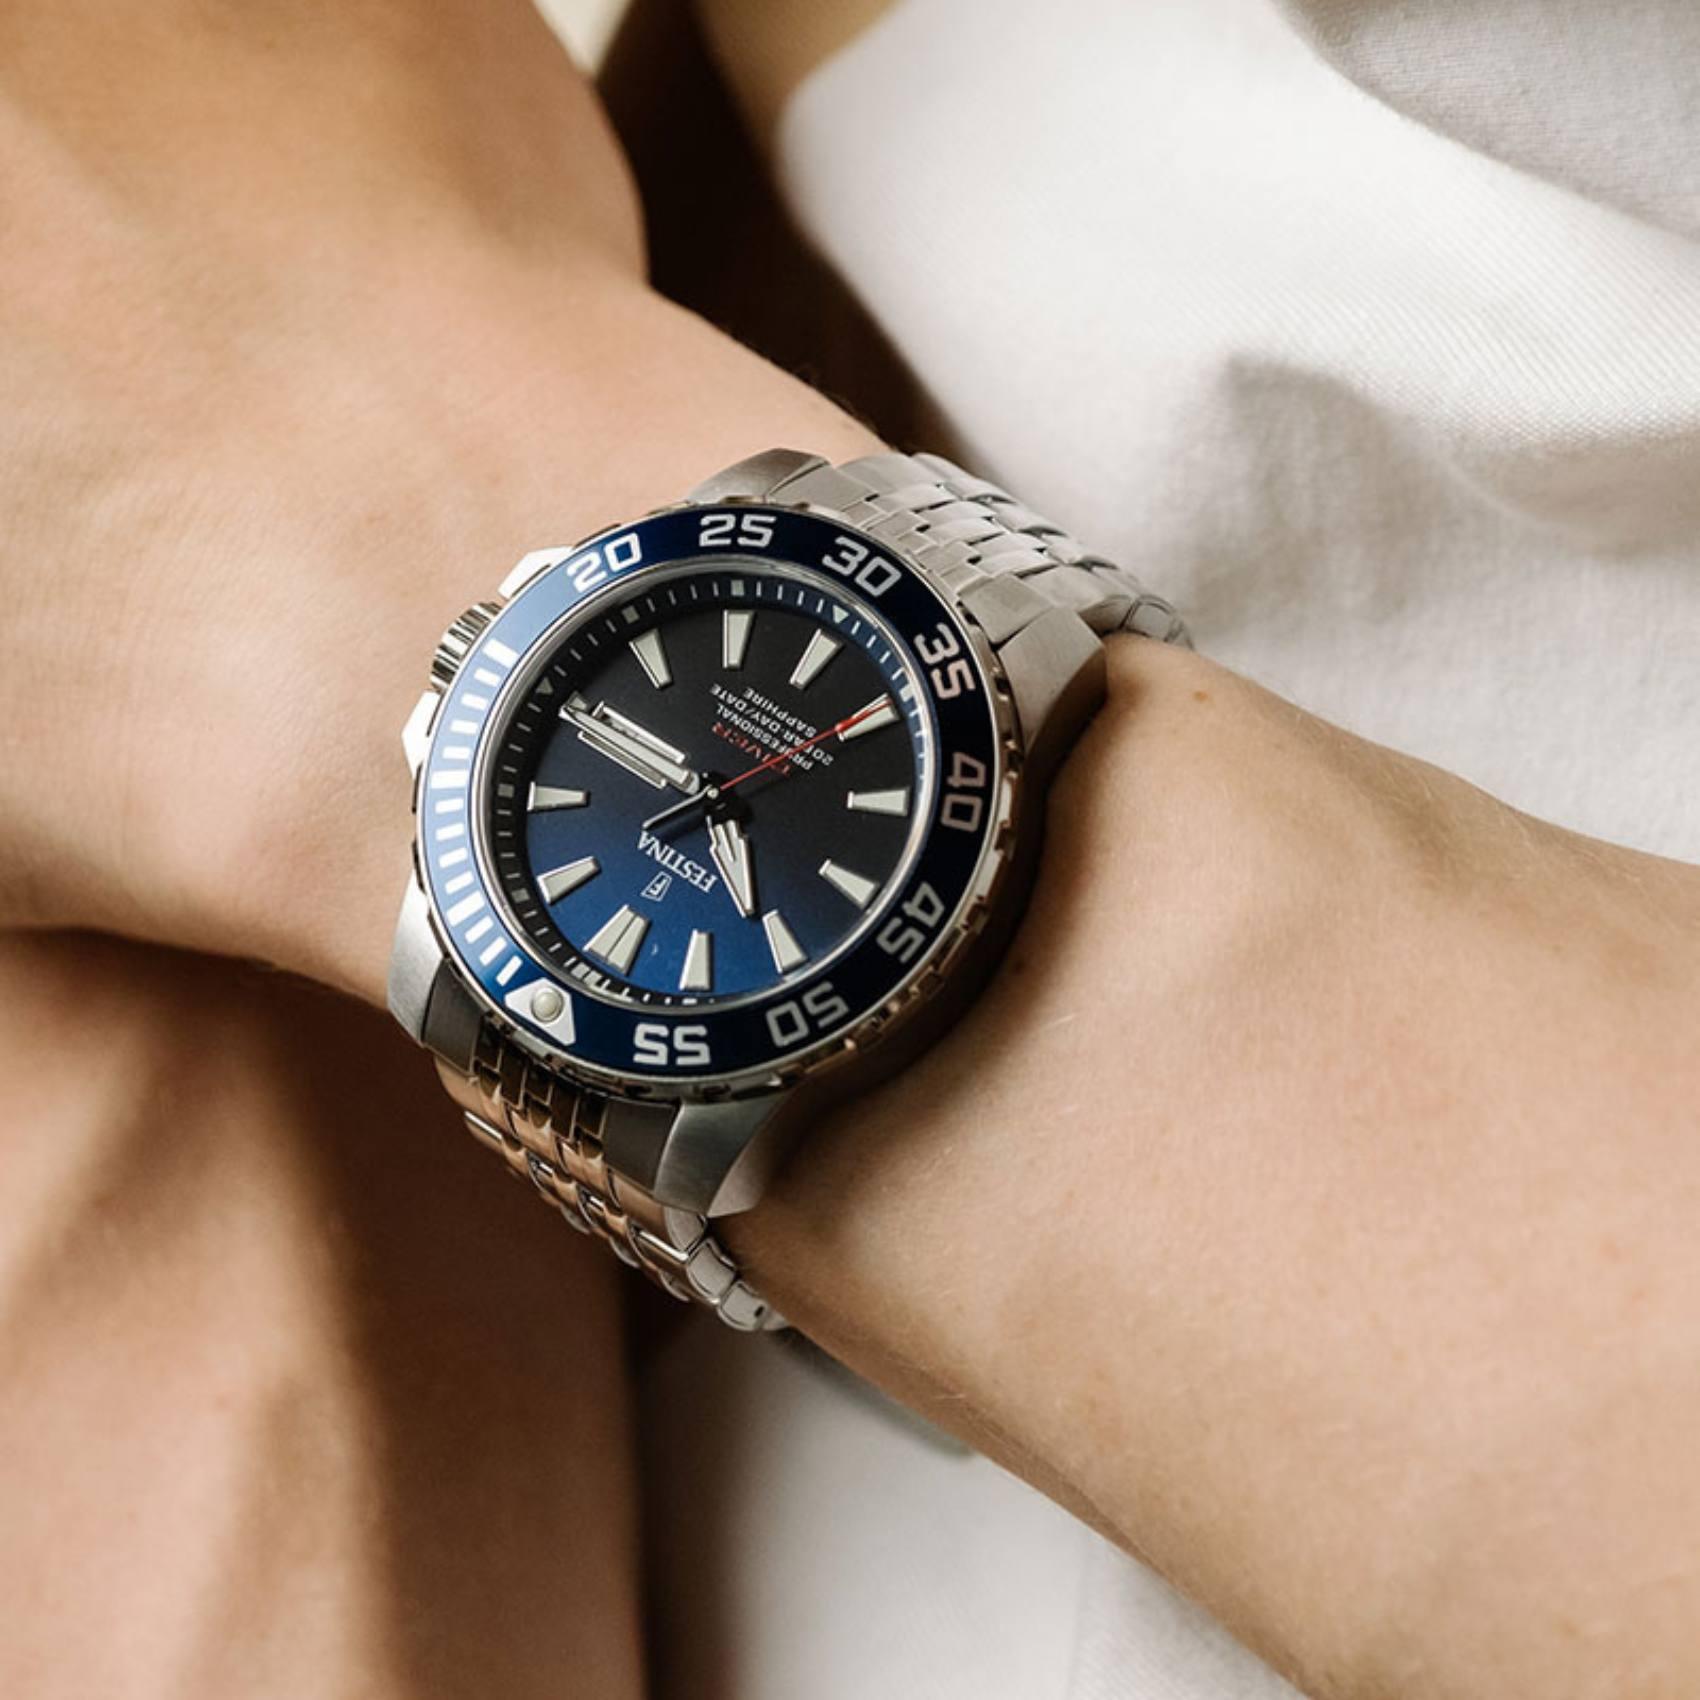 Καταδυτικό ρολόι Festina Diver F20661/1 με ένδειξη μερομηνίας/ημέρας, ασημί μπρασελέ, μπλε καντράν και στεφάνι διαμέτρου 45mm.